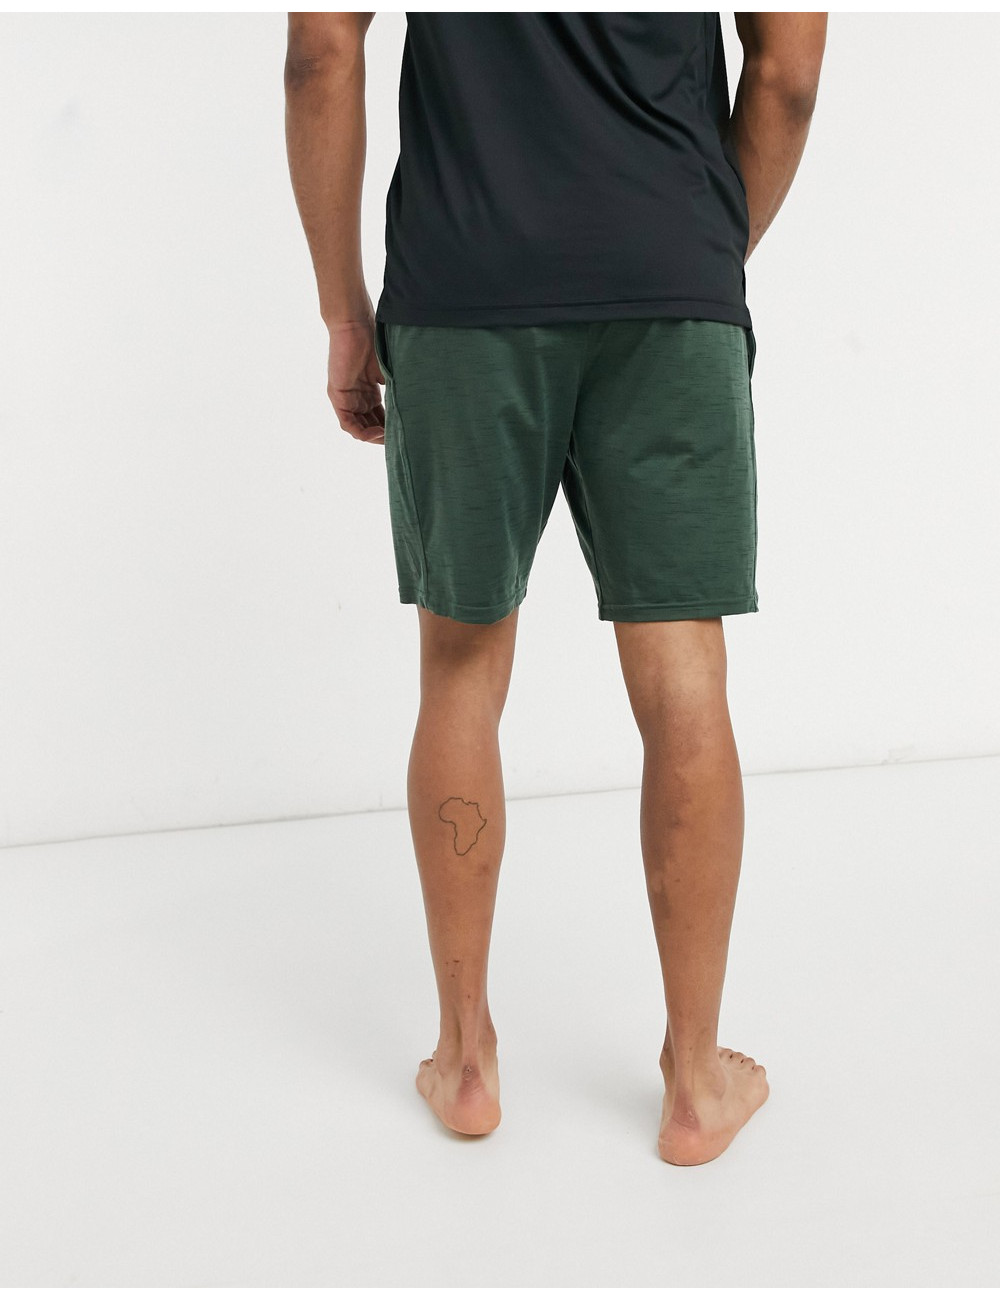 Nike Yoga Hyperdry shorts...